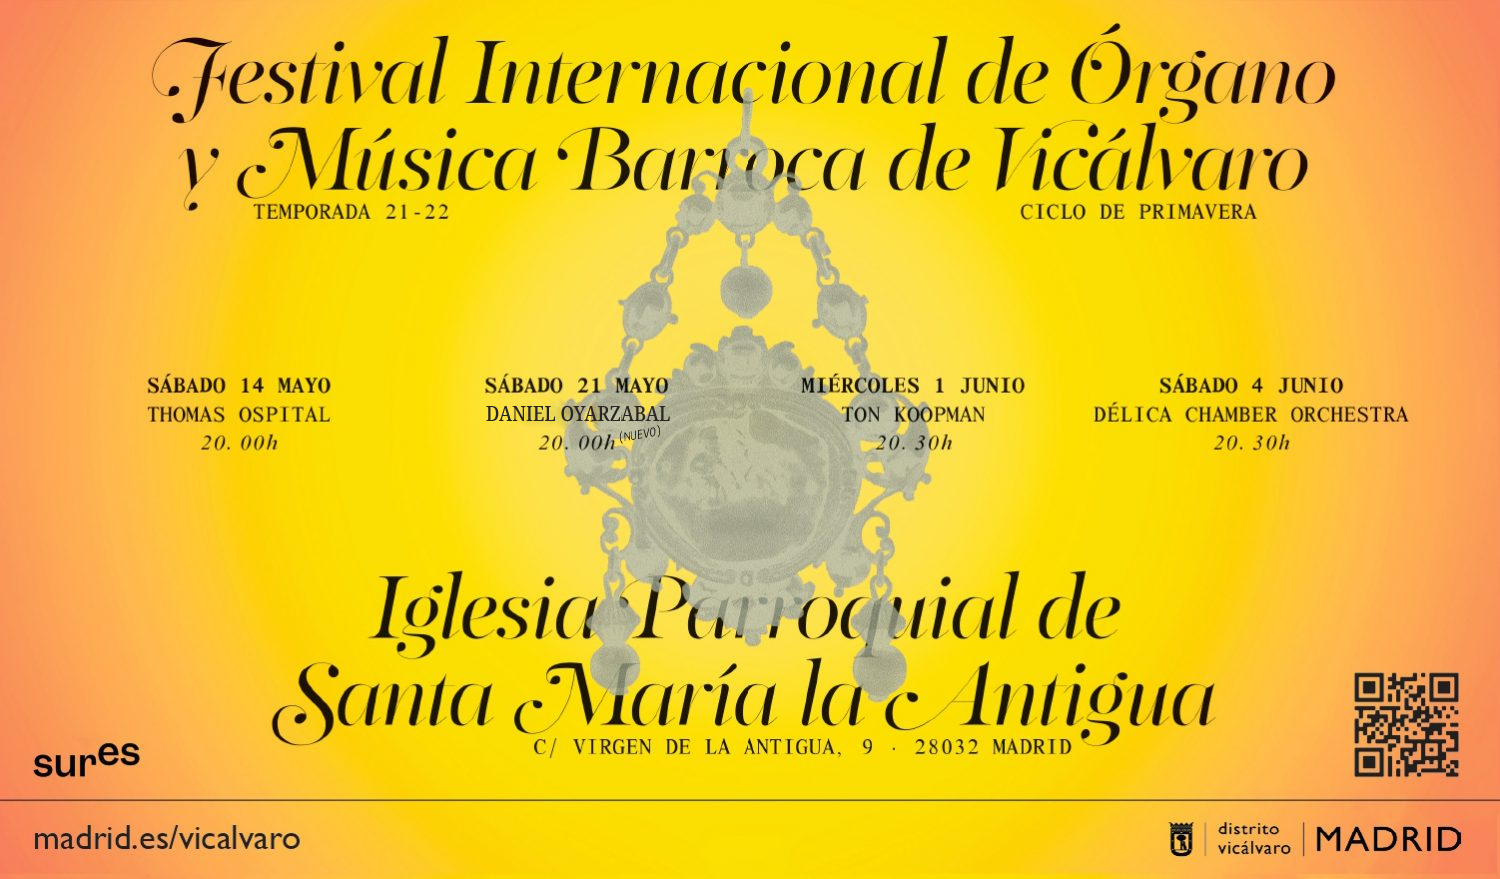 Cartel Festival Internacional de Órgano y Música Barroca de Vicálvaro. Ciclo de Primavera 2022